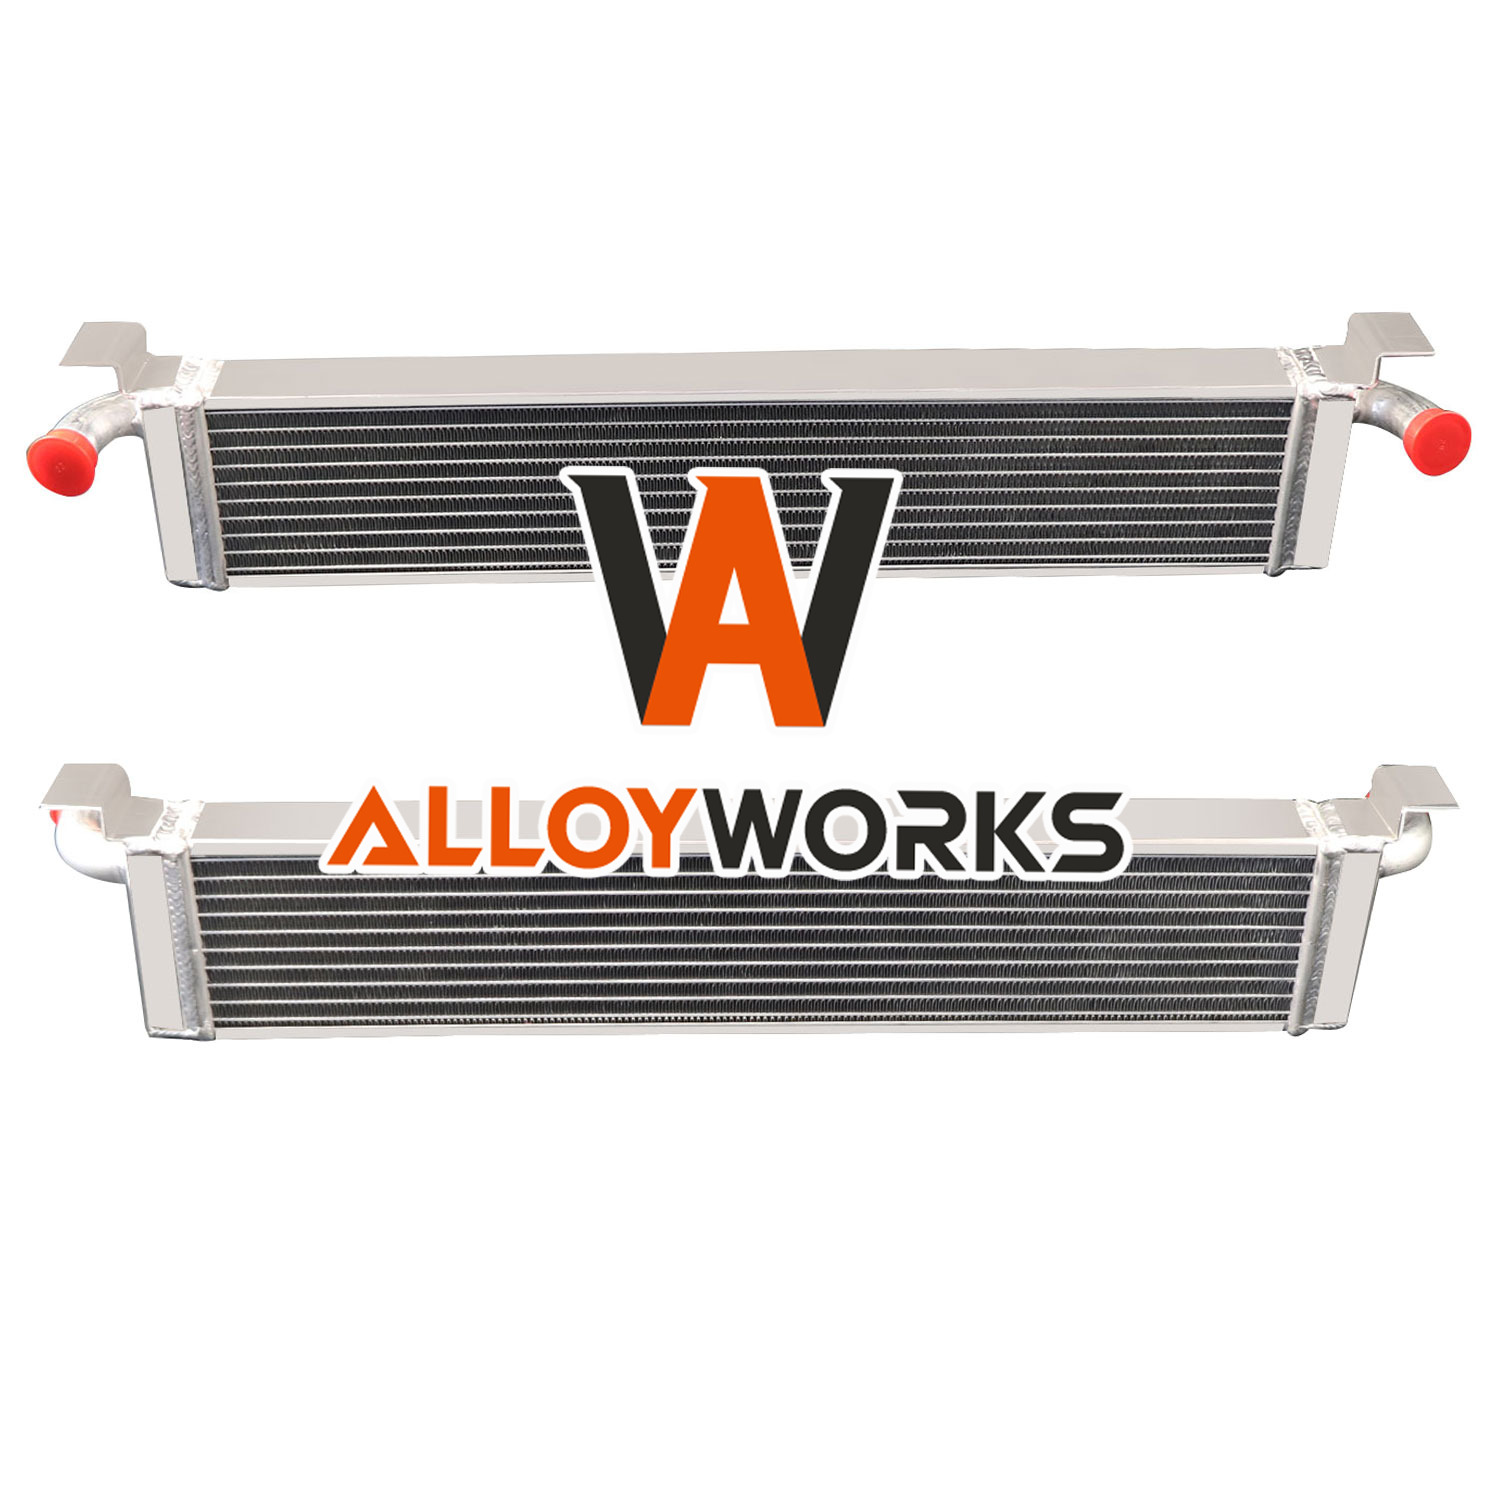 2 Row Aluminum Radiator For Kitfox w/Rotax 532/582, 618, 670 2-stroke engine